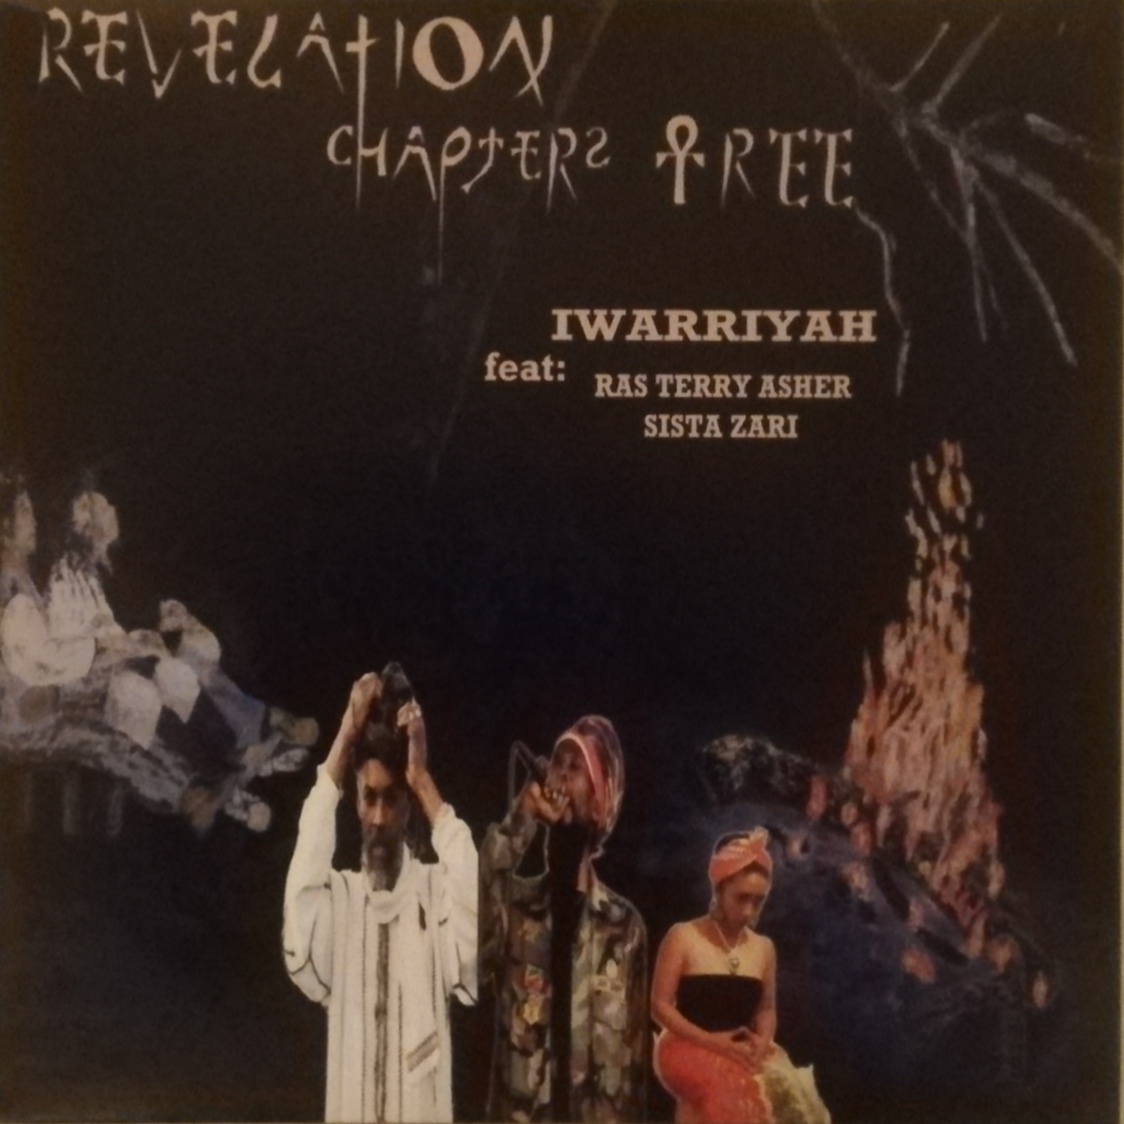 LP IWARRIYAH - REVELATION CHAPTER TREE